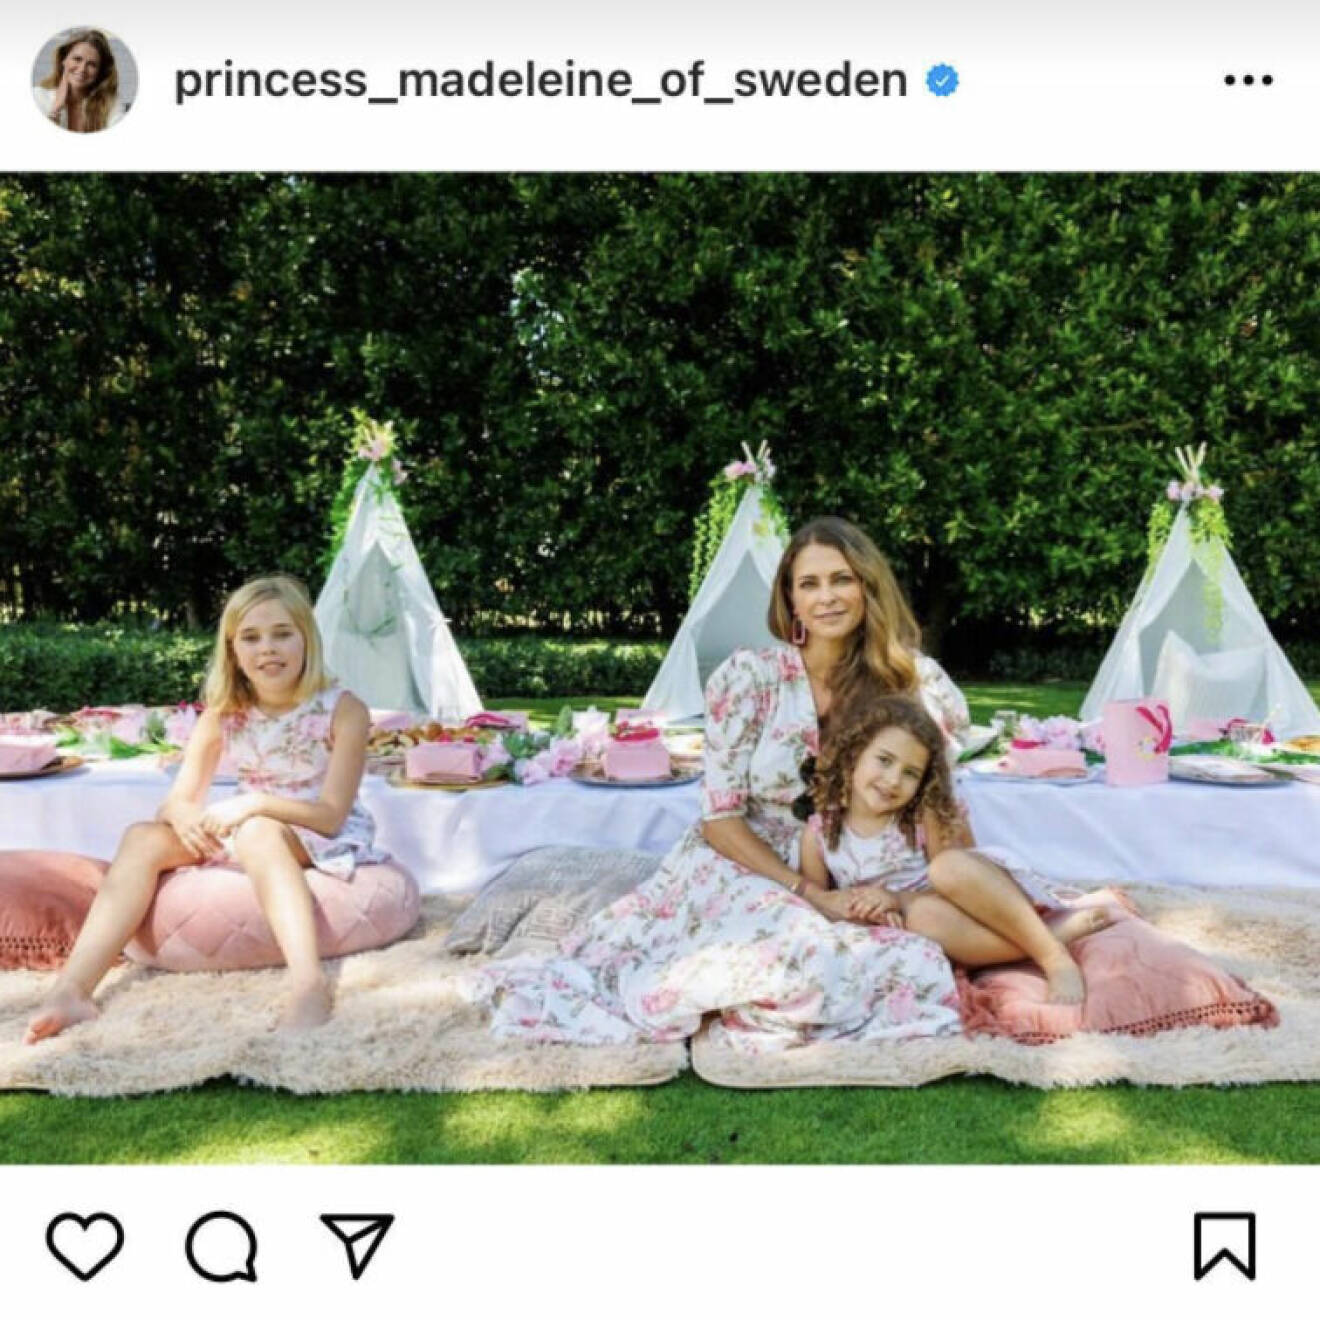 Prinsessan Madeleine med sina två flickor på Instagram